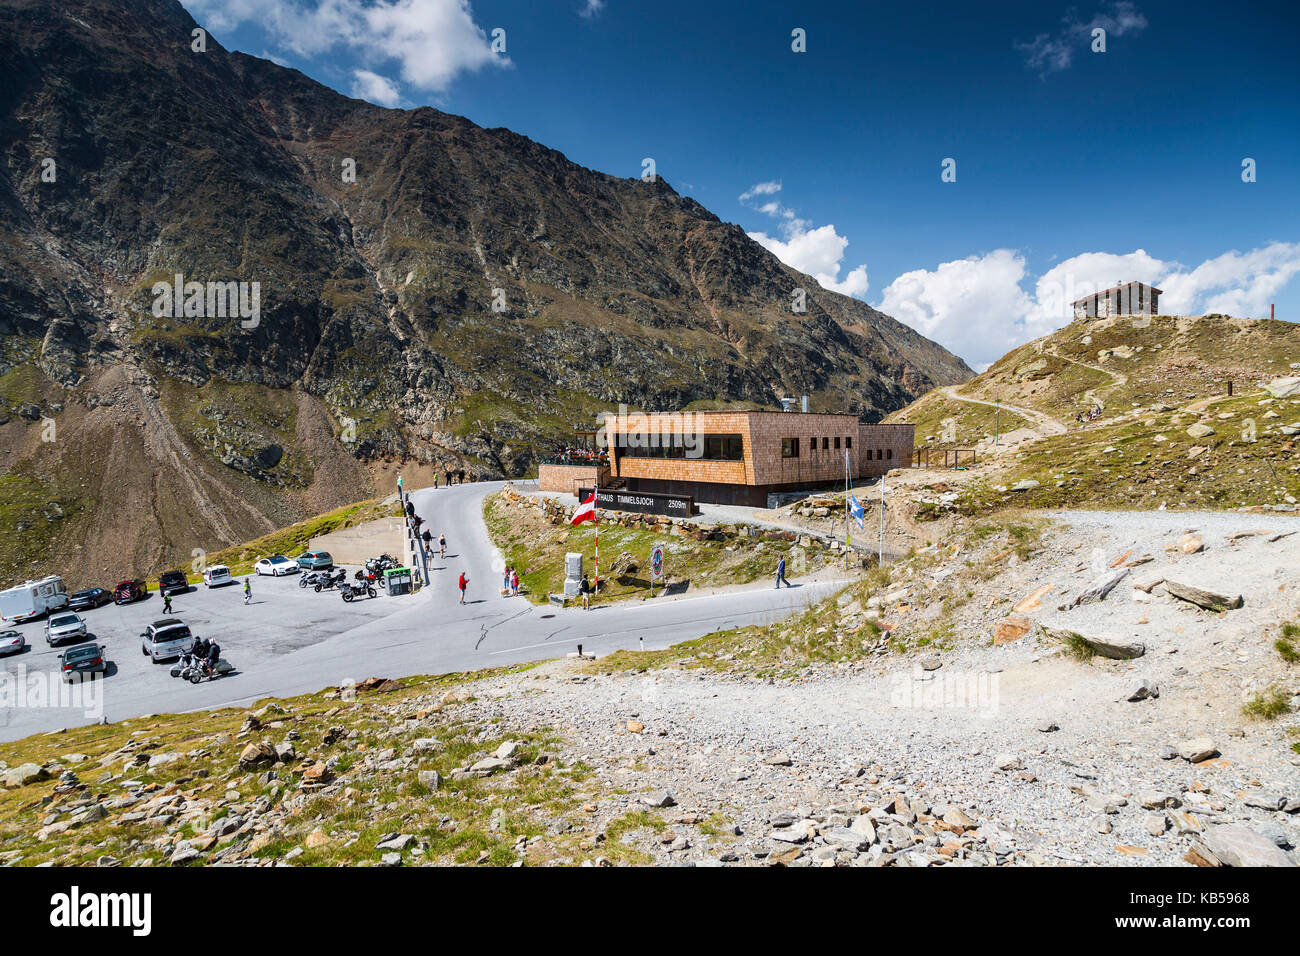 Europe, Autriche/Italie, Alpes, montagnes - Passo Rombo - Timmelsjoch Banque D'Images